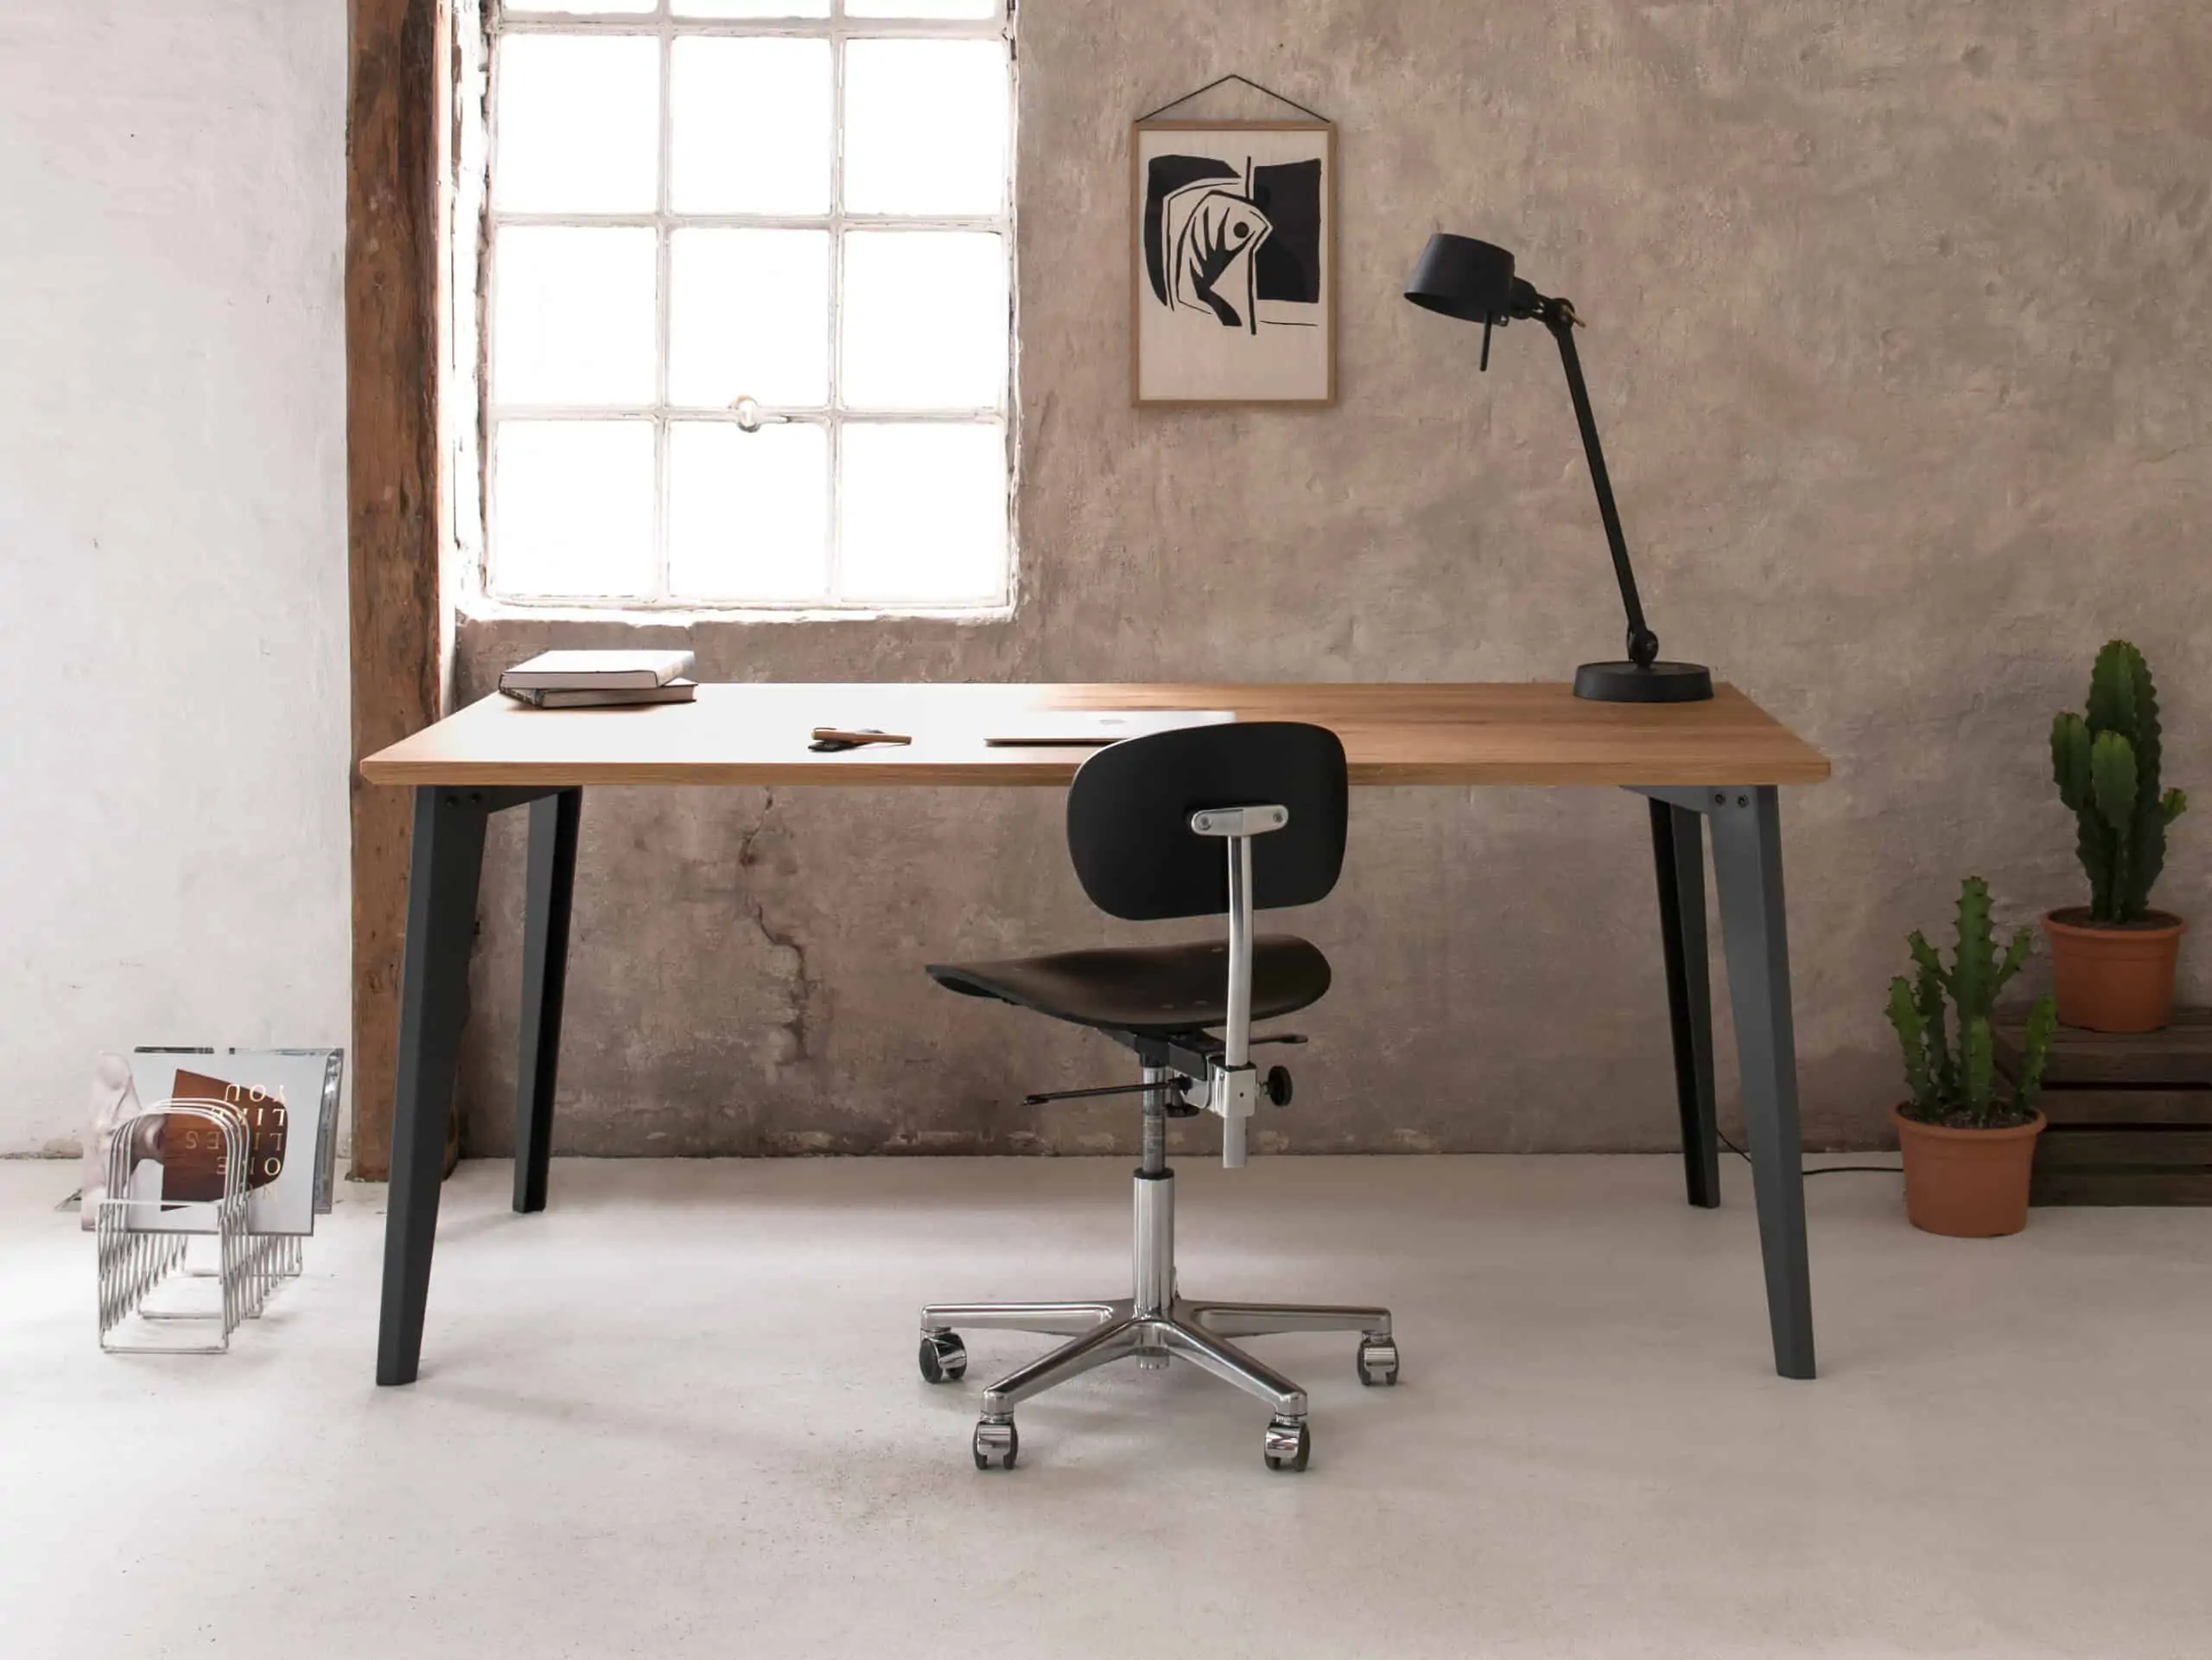 Büro mit Industriecharakter: Ein Schreibtisch mit dunkelgrauem Metallgestell steht vor einer grob verputzter Wand.